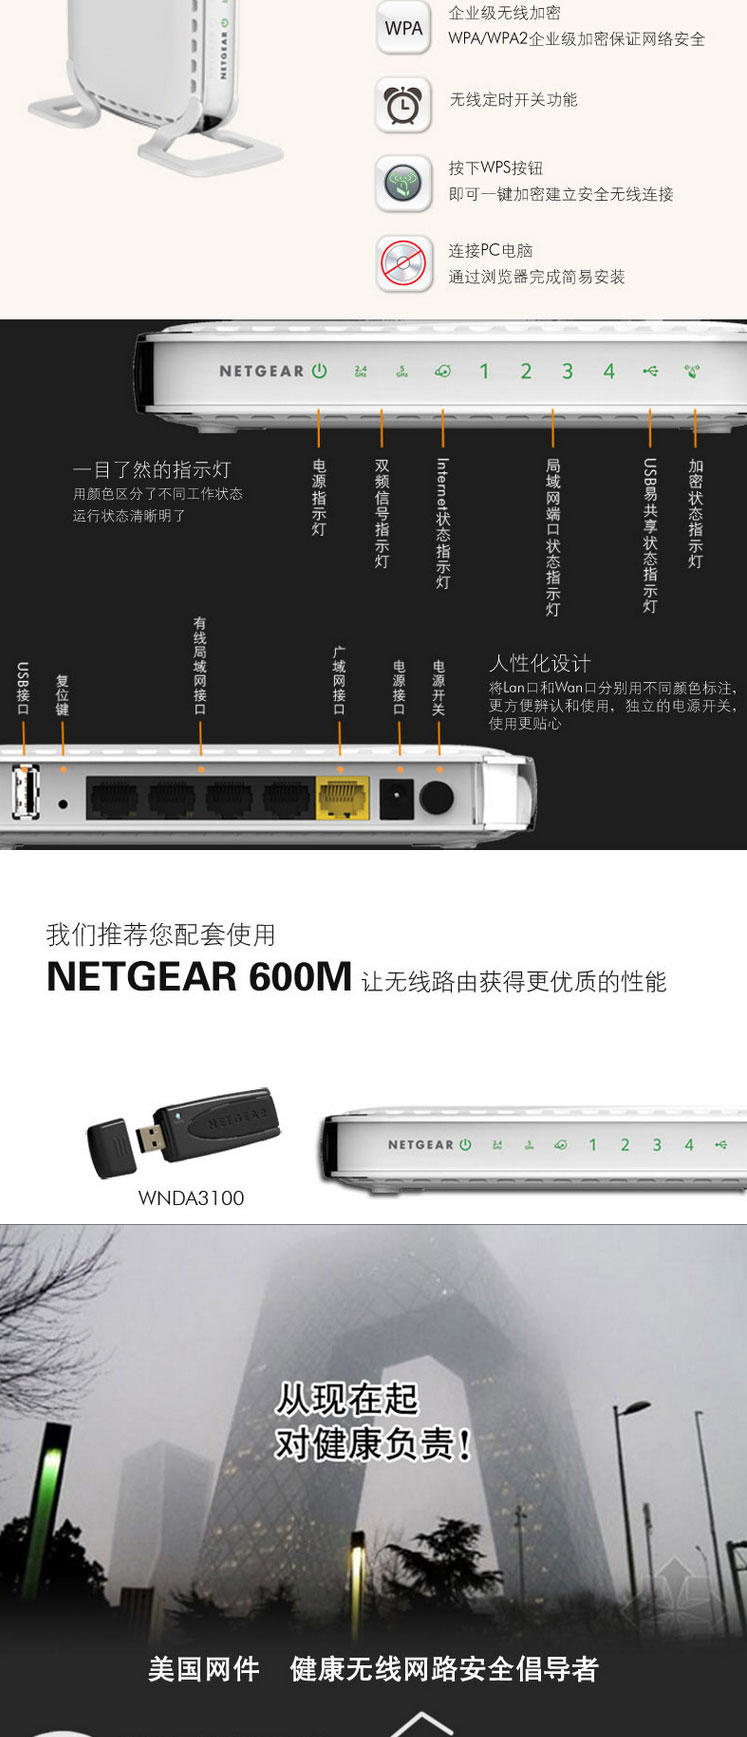 美国网件（NETGEAR) JNDR3000 600M并发双频 N600无线双频宽带路由器